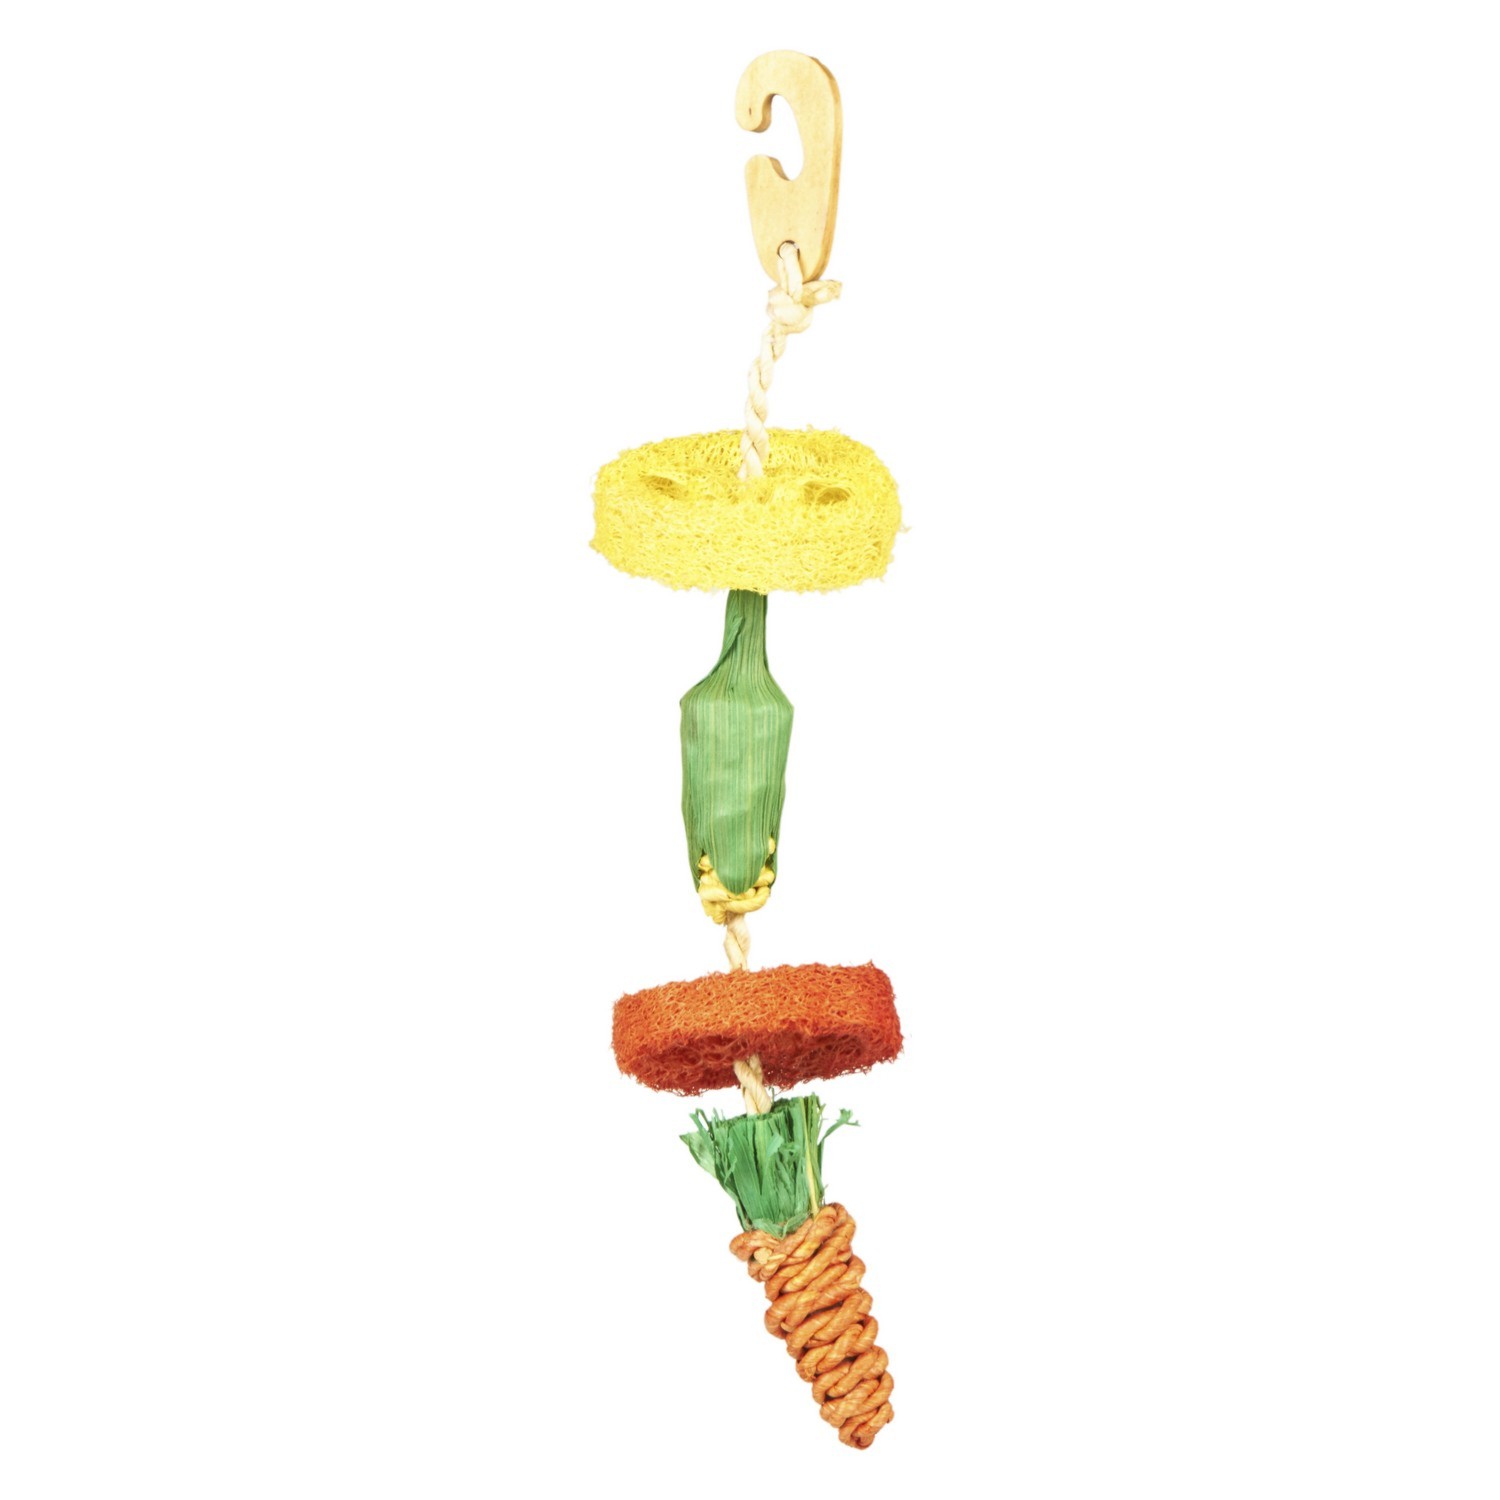 Natural Loofah Hanging Toy - Orange Image